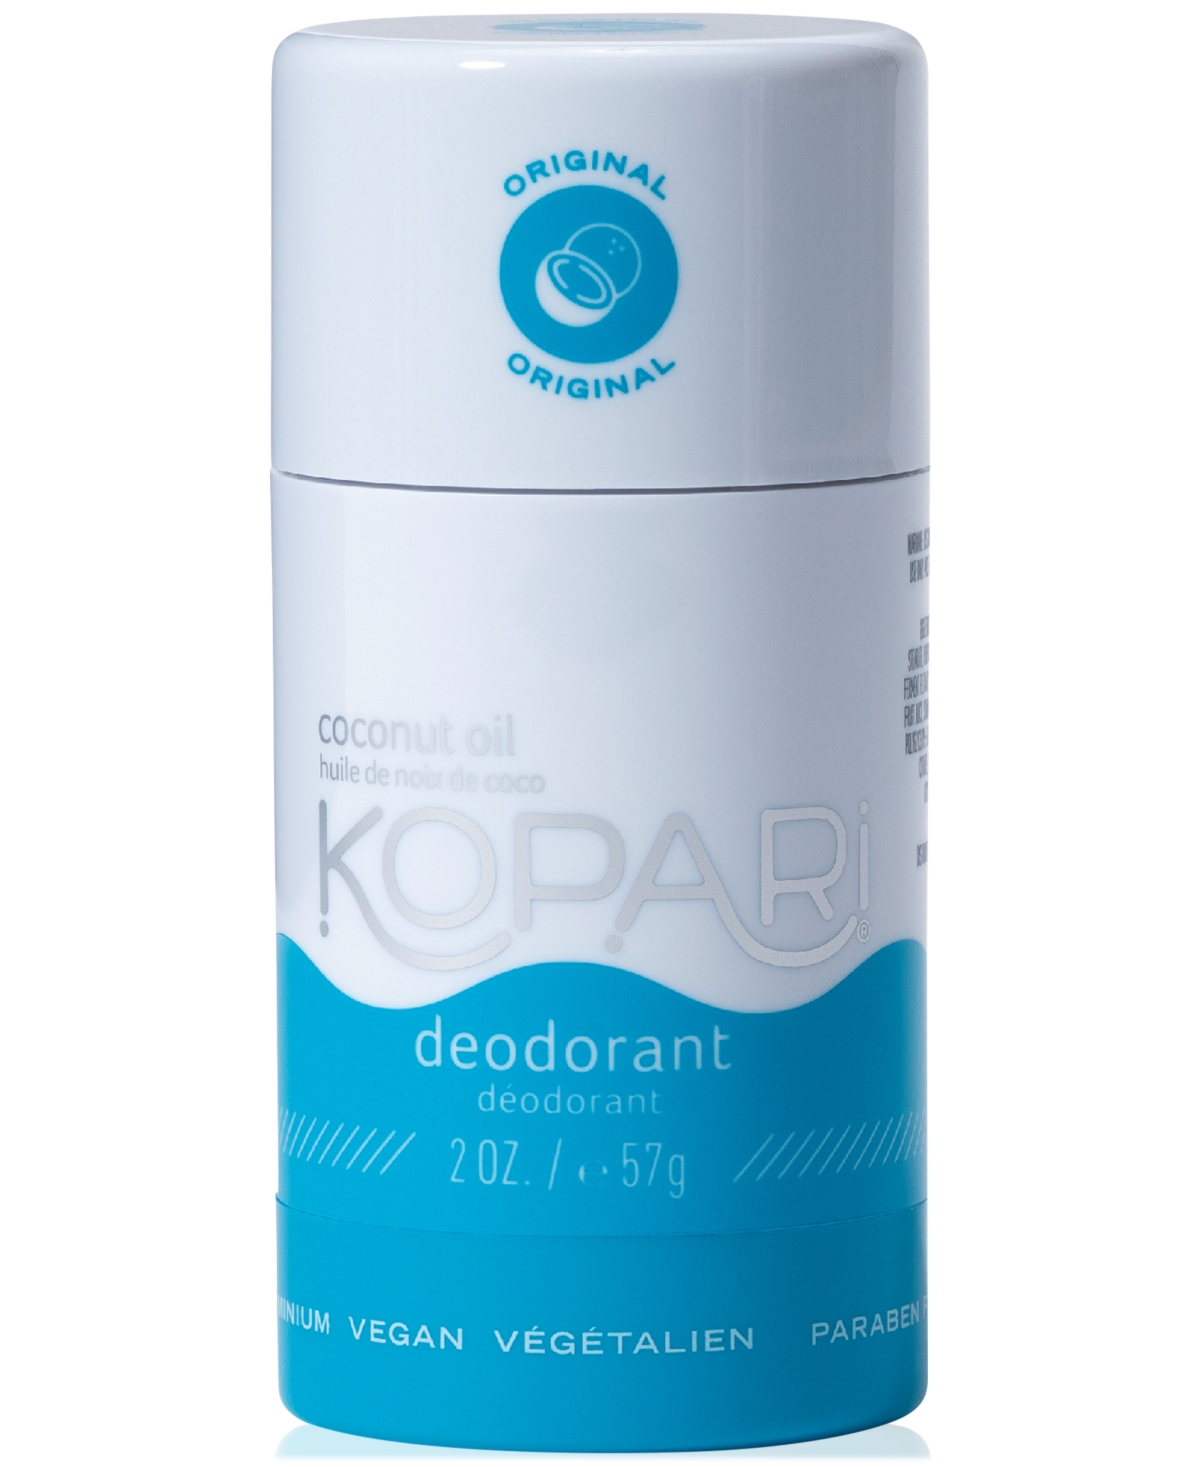 Kopari Beauty Aluminum-free Coconut Deodorant